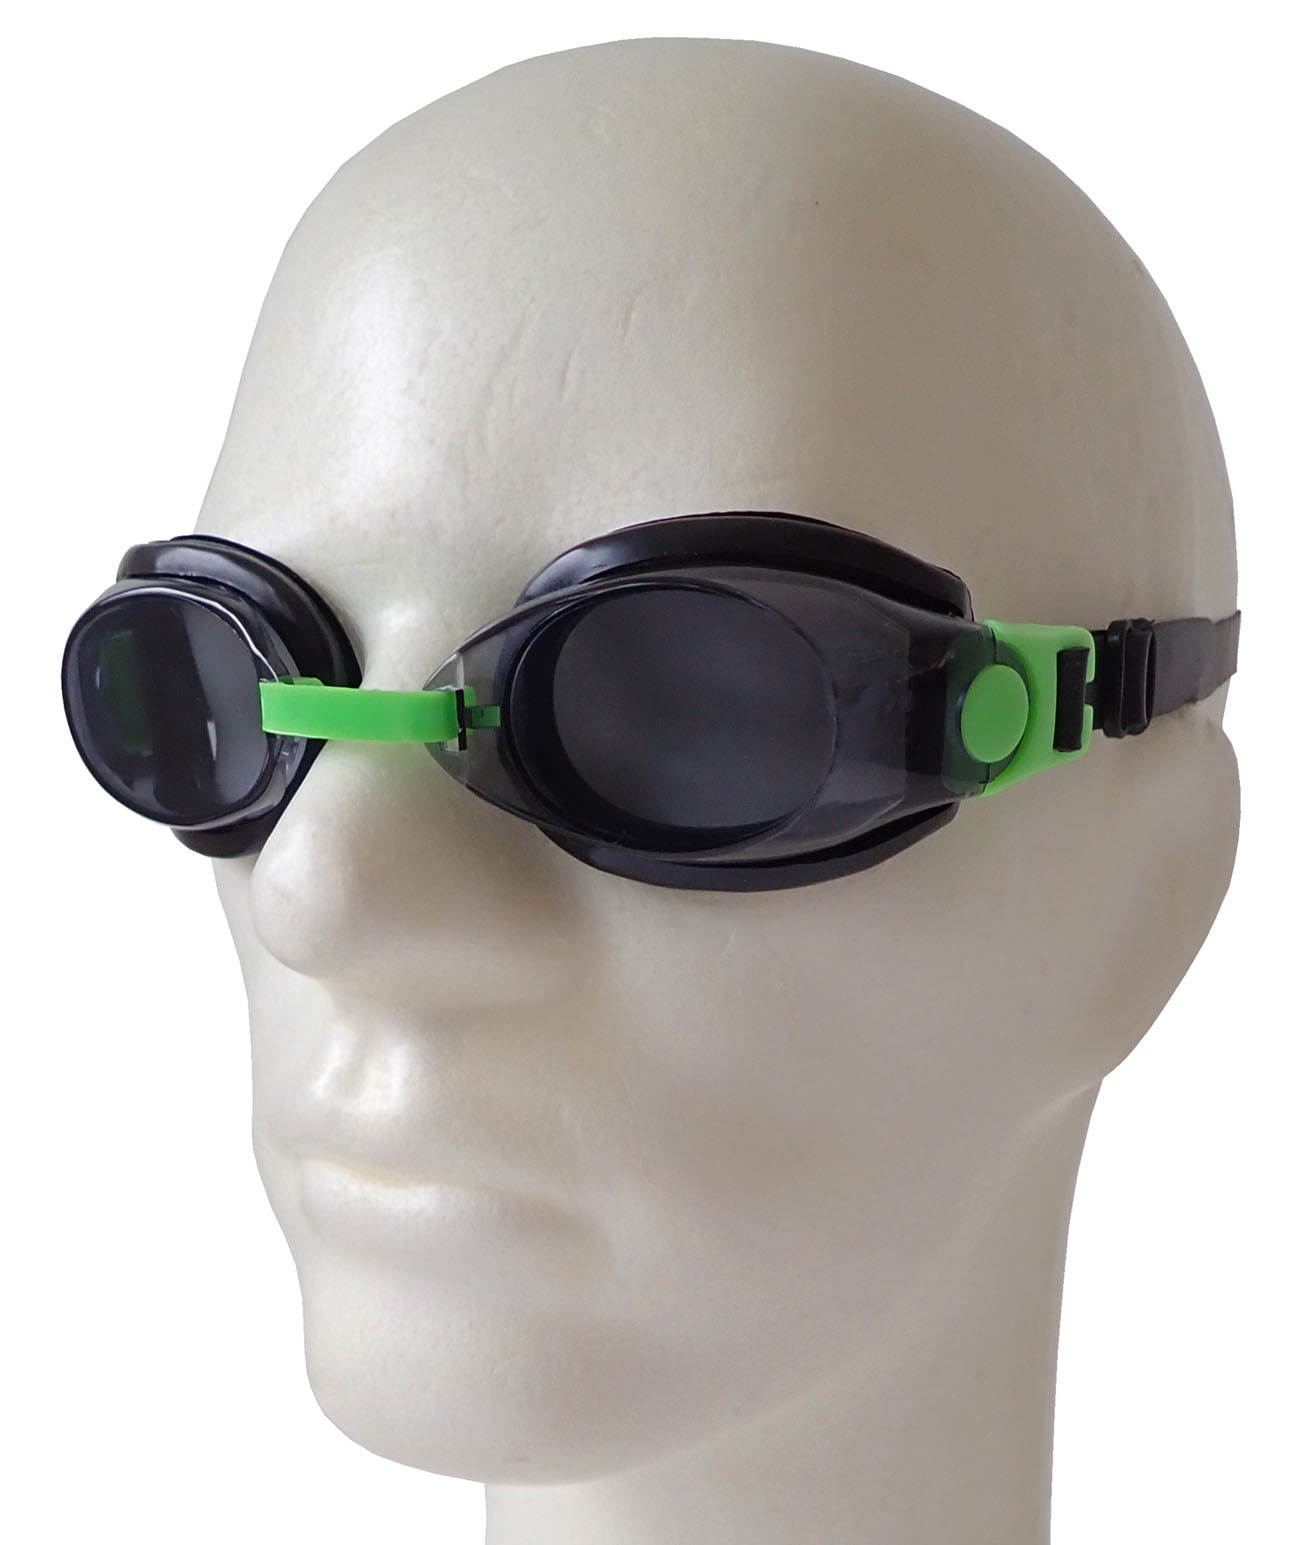 Plavecké brýle s Antifog úpravou - zelené